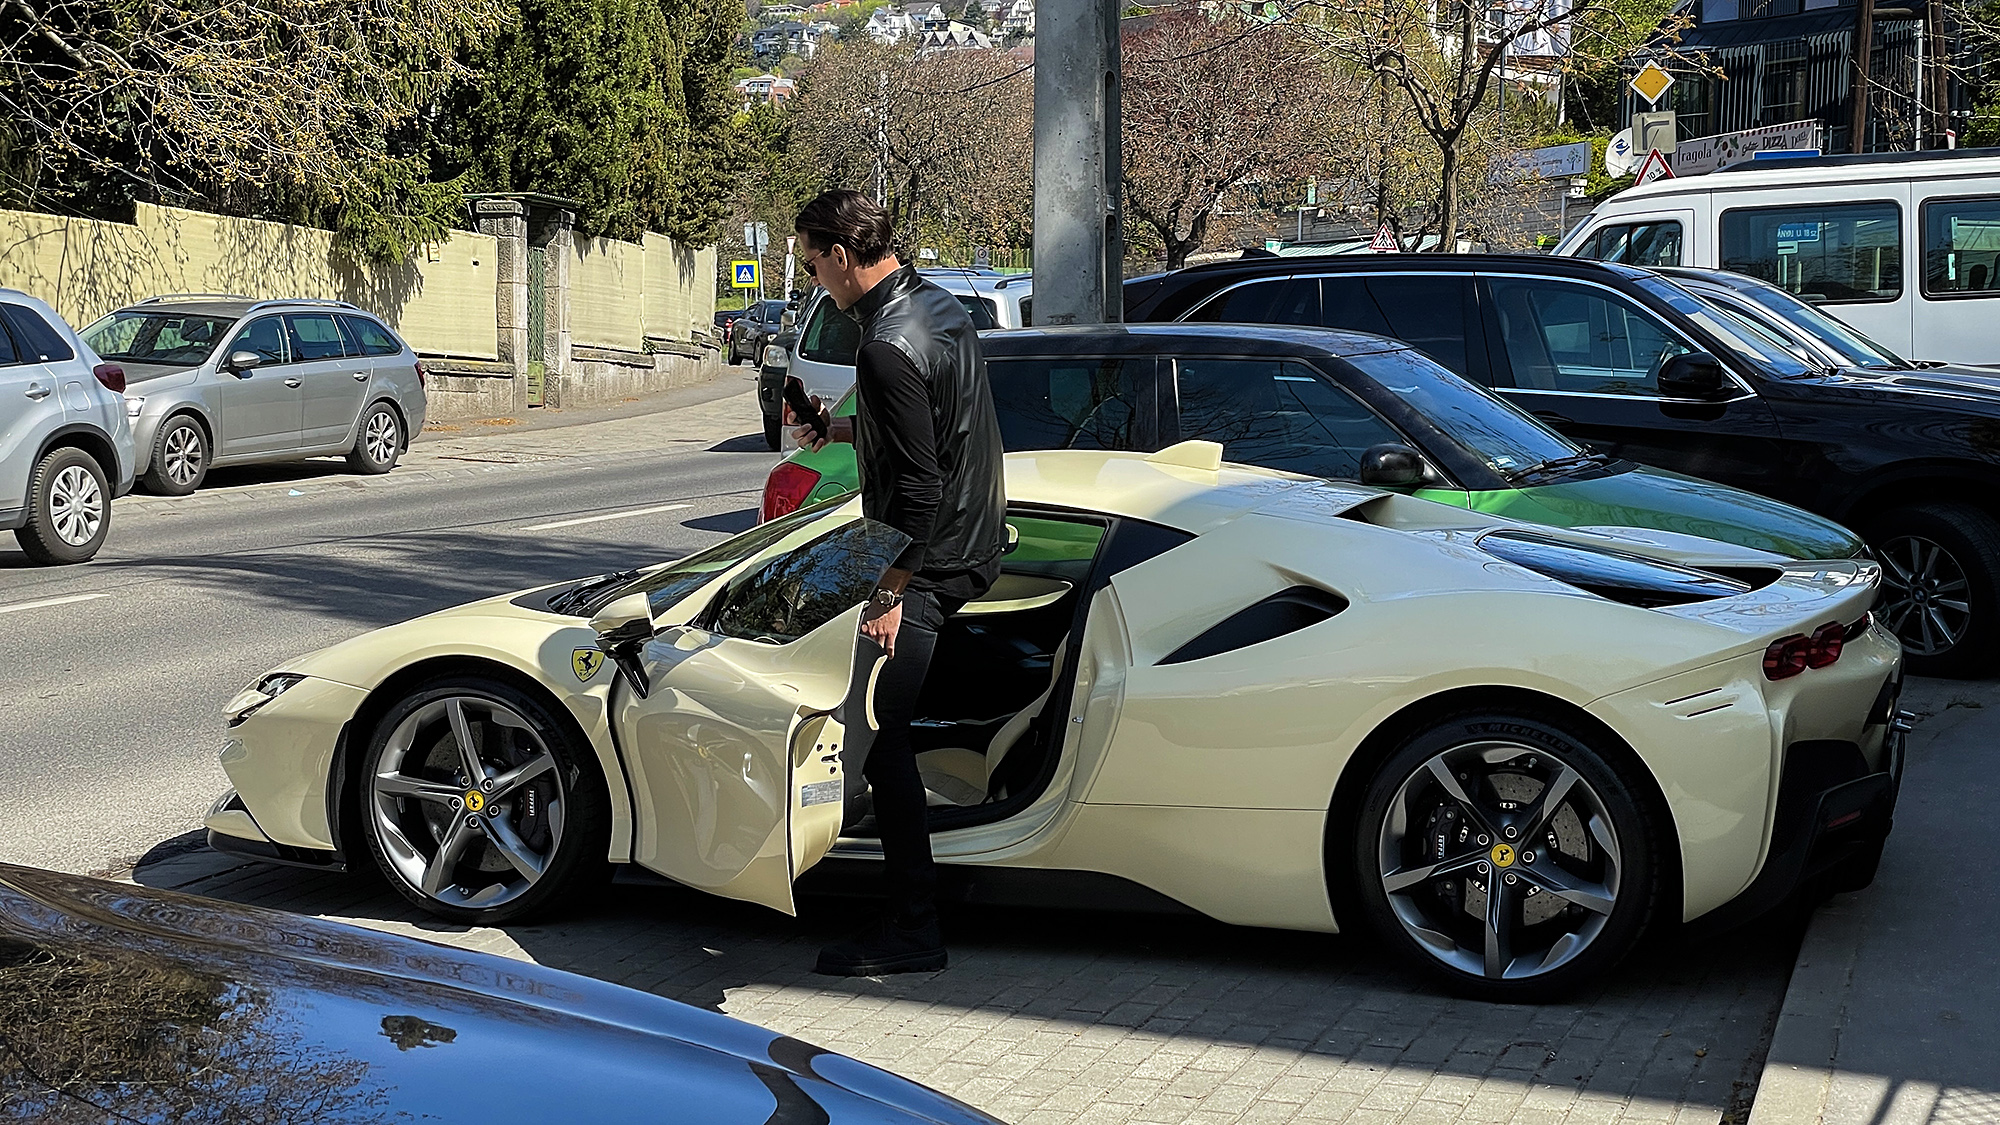 NERceg: Somlai Bálint 179 millió forintért árulja a kétéves, használt, elefántcsontszínű Ferrariját